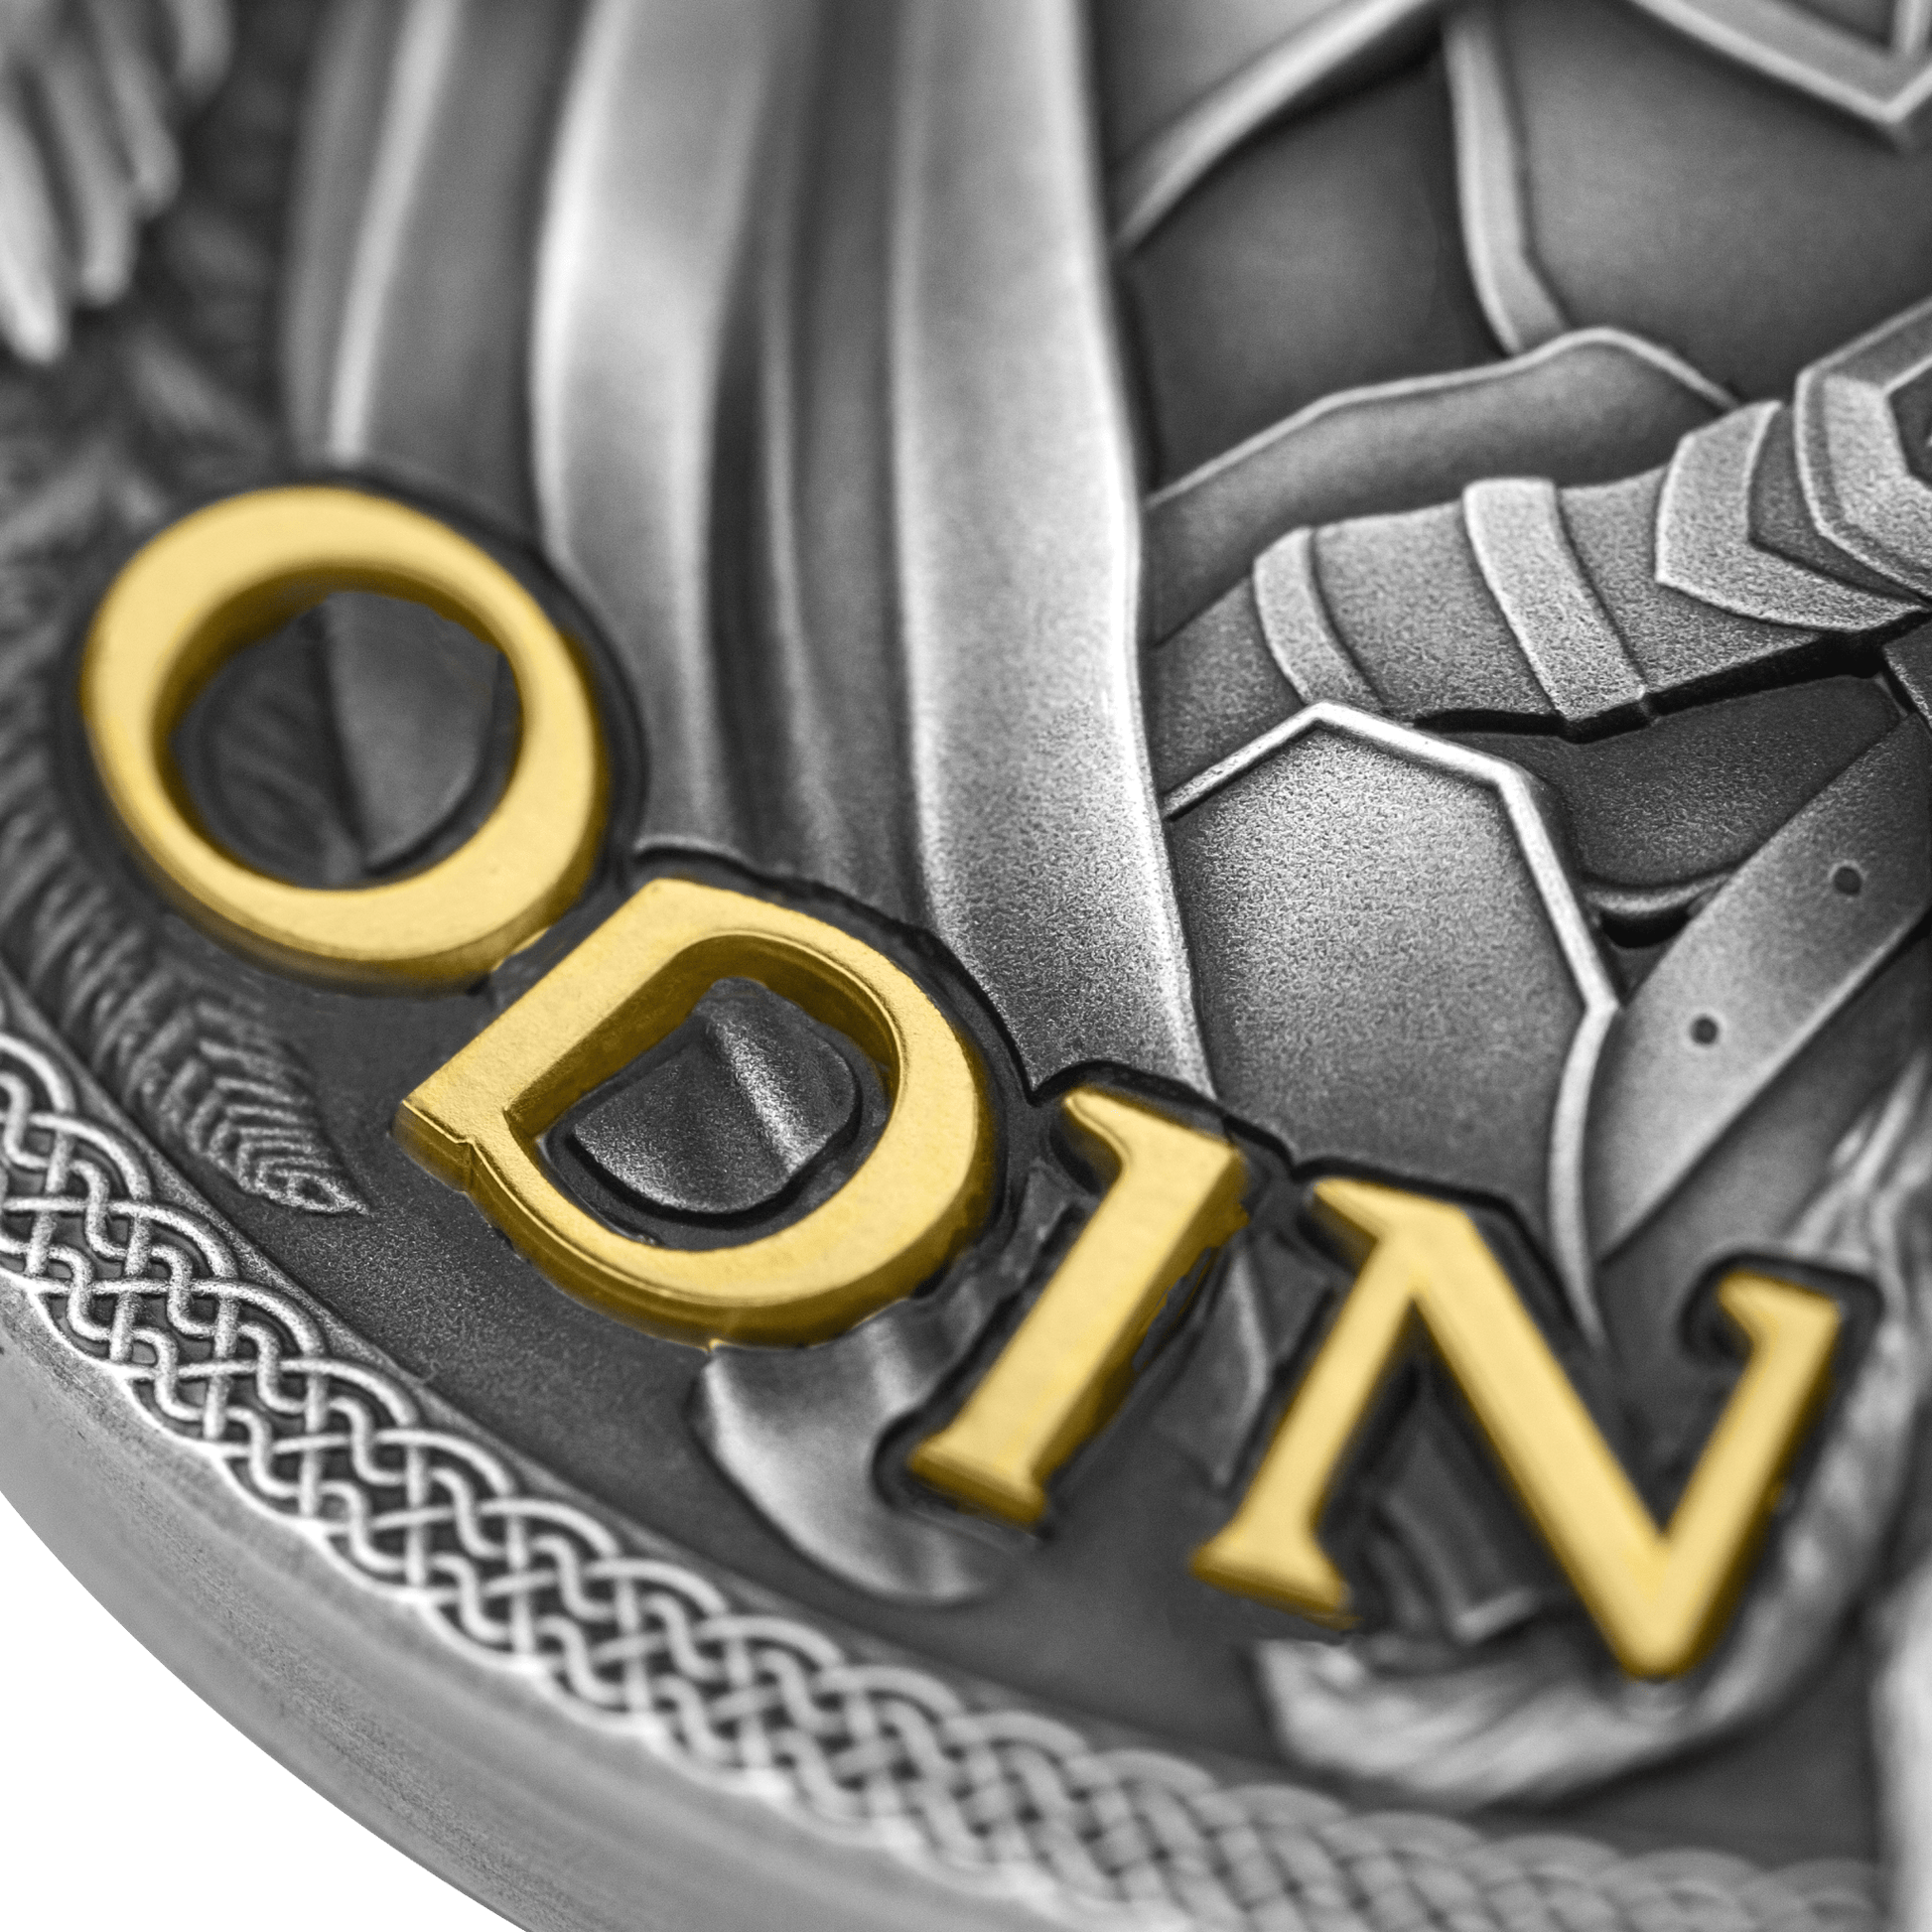 2023 Niue ODIN 2 oz Silver Coin - OZB